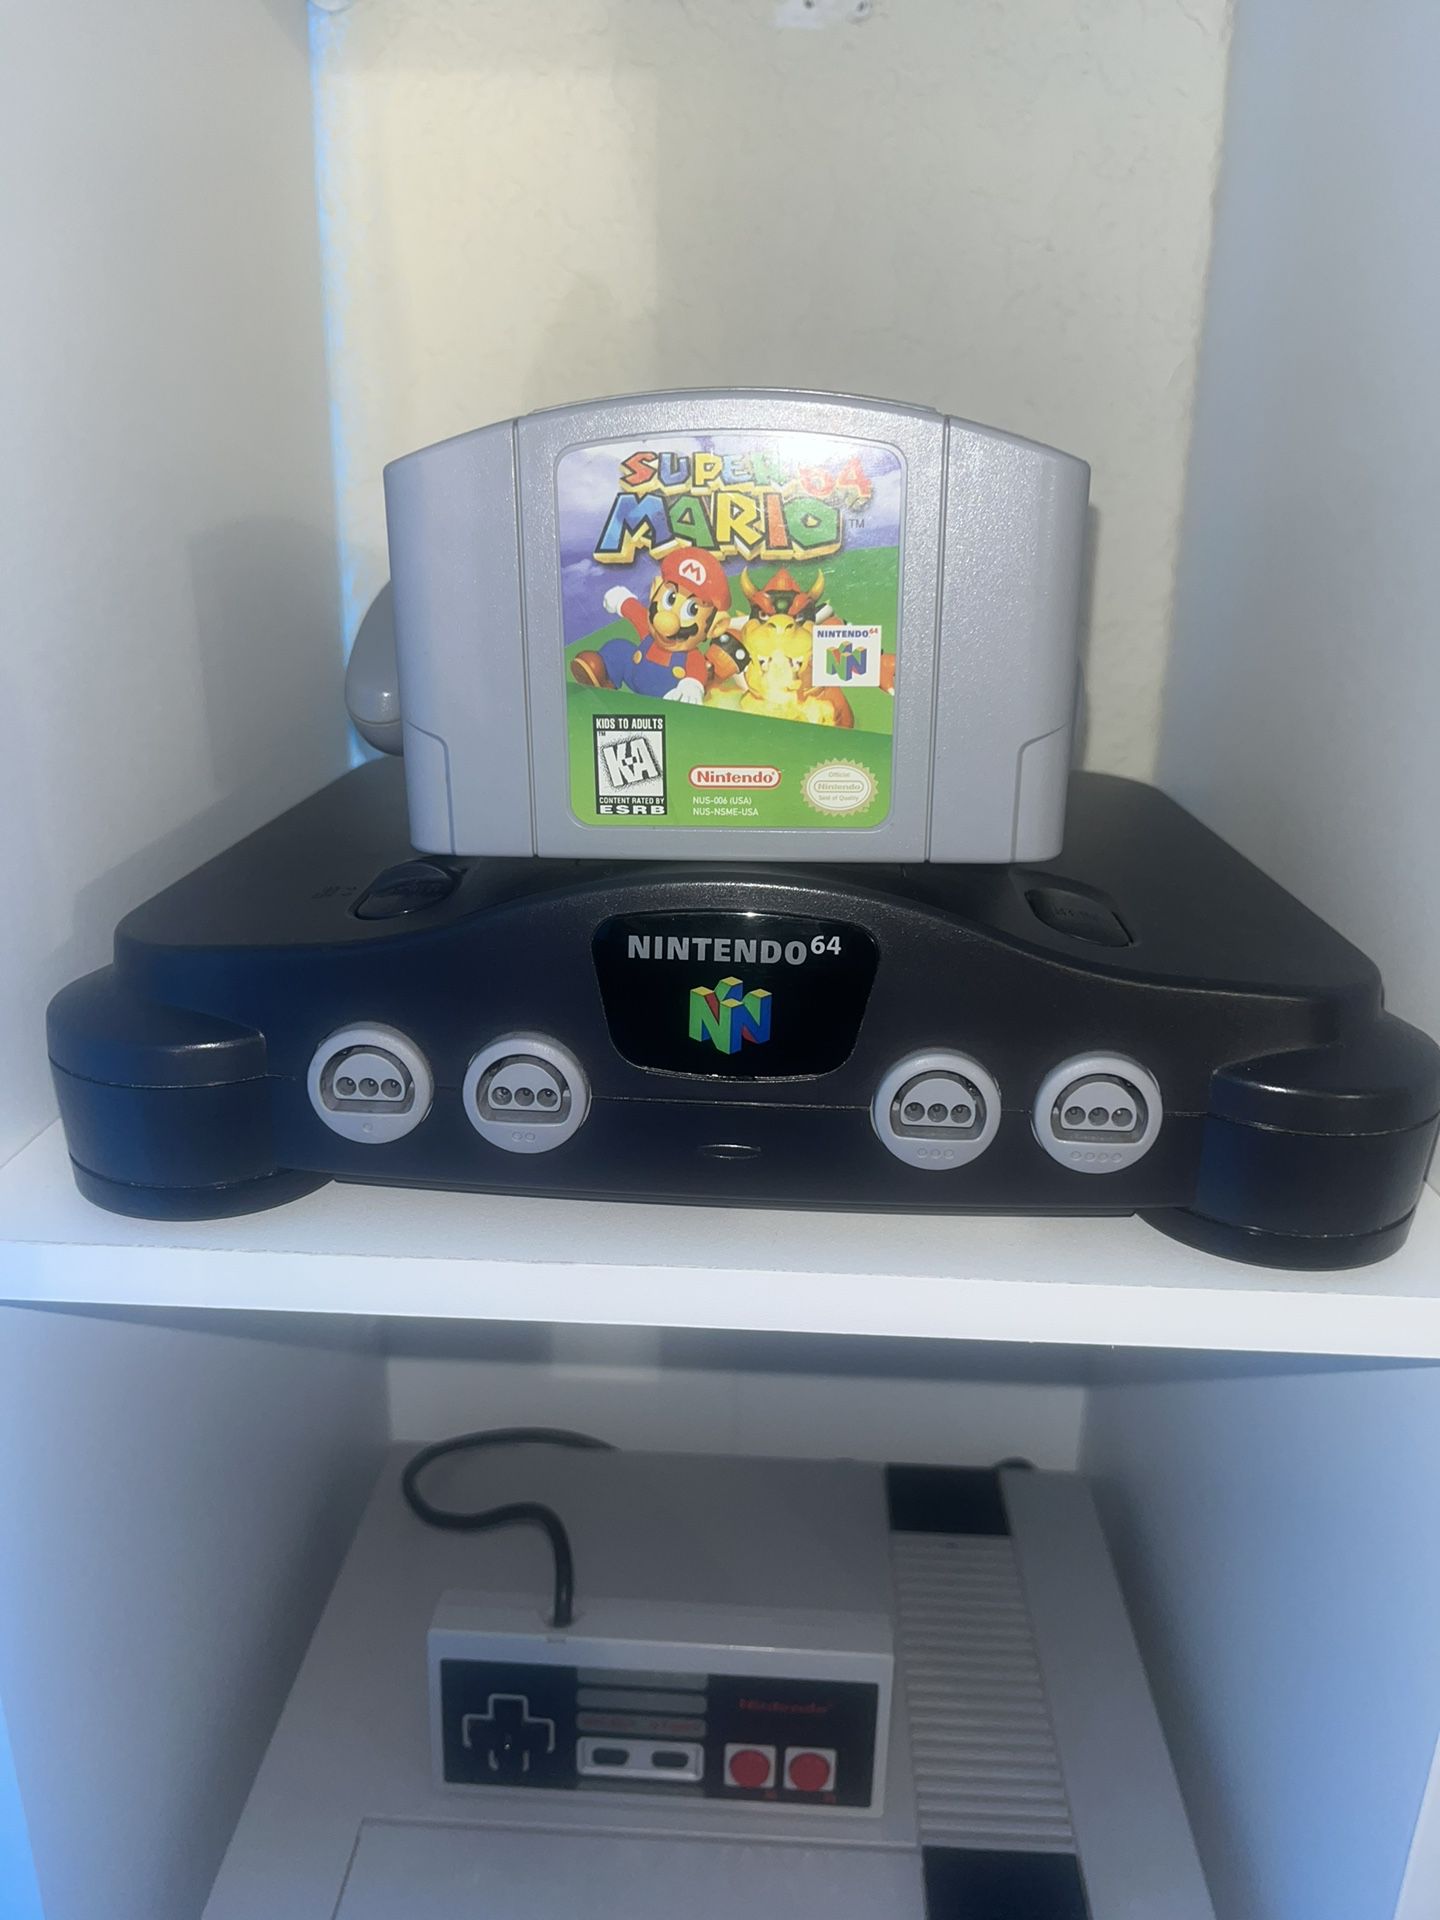 Nintendo 64, w/ Super Mario 64 